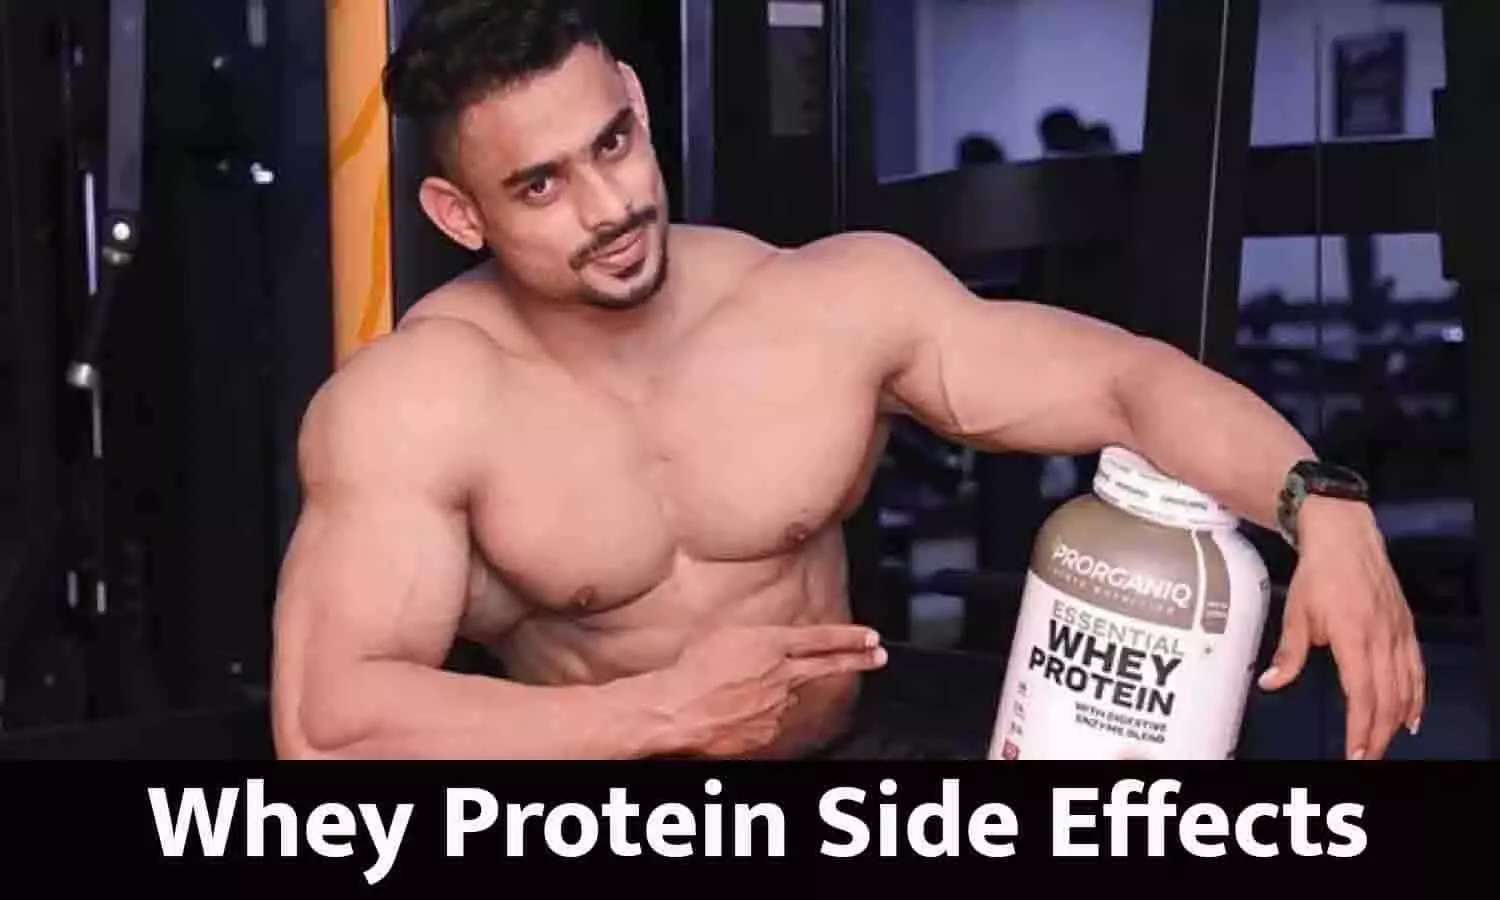 Whey Protein Side Effects In Hindi: बॉडी बनाने के लिए अगर आप भी करते है व्हे प्रोटीन का इस्तेमाल तो ये खबर पढ़ हिल जाएंगे आप!